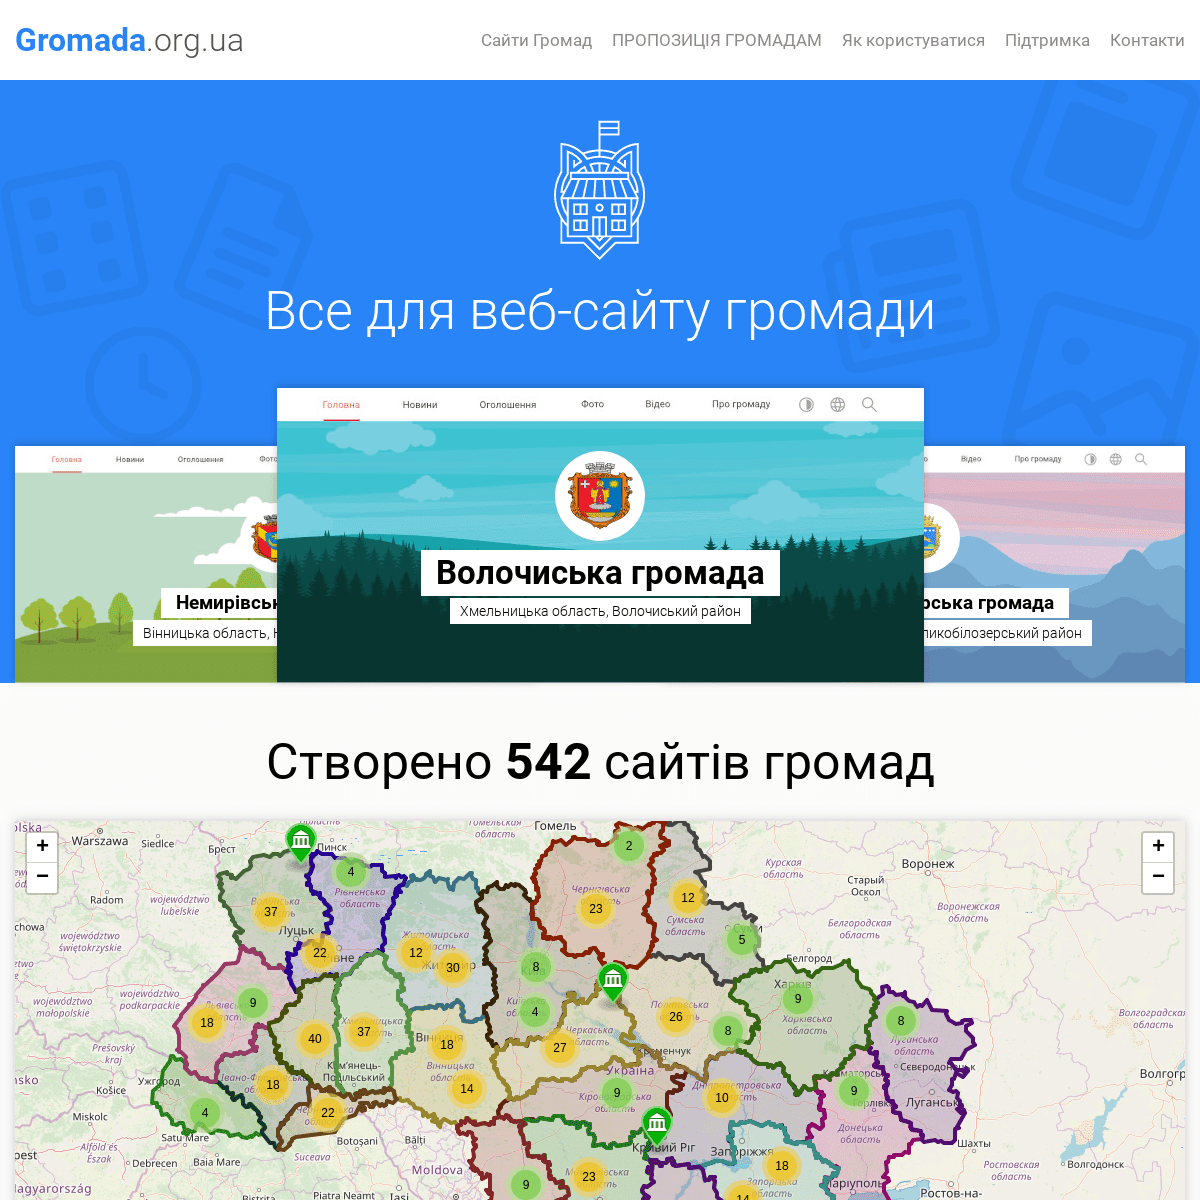 Веб-сайти діючих громад України - Gromada.org.ua